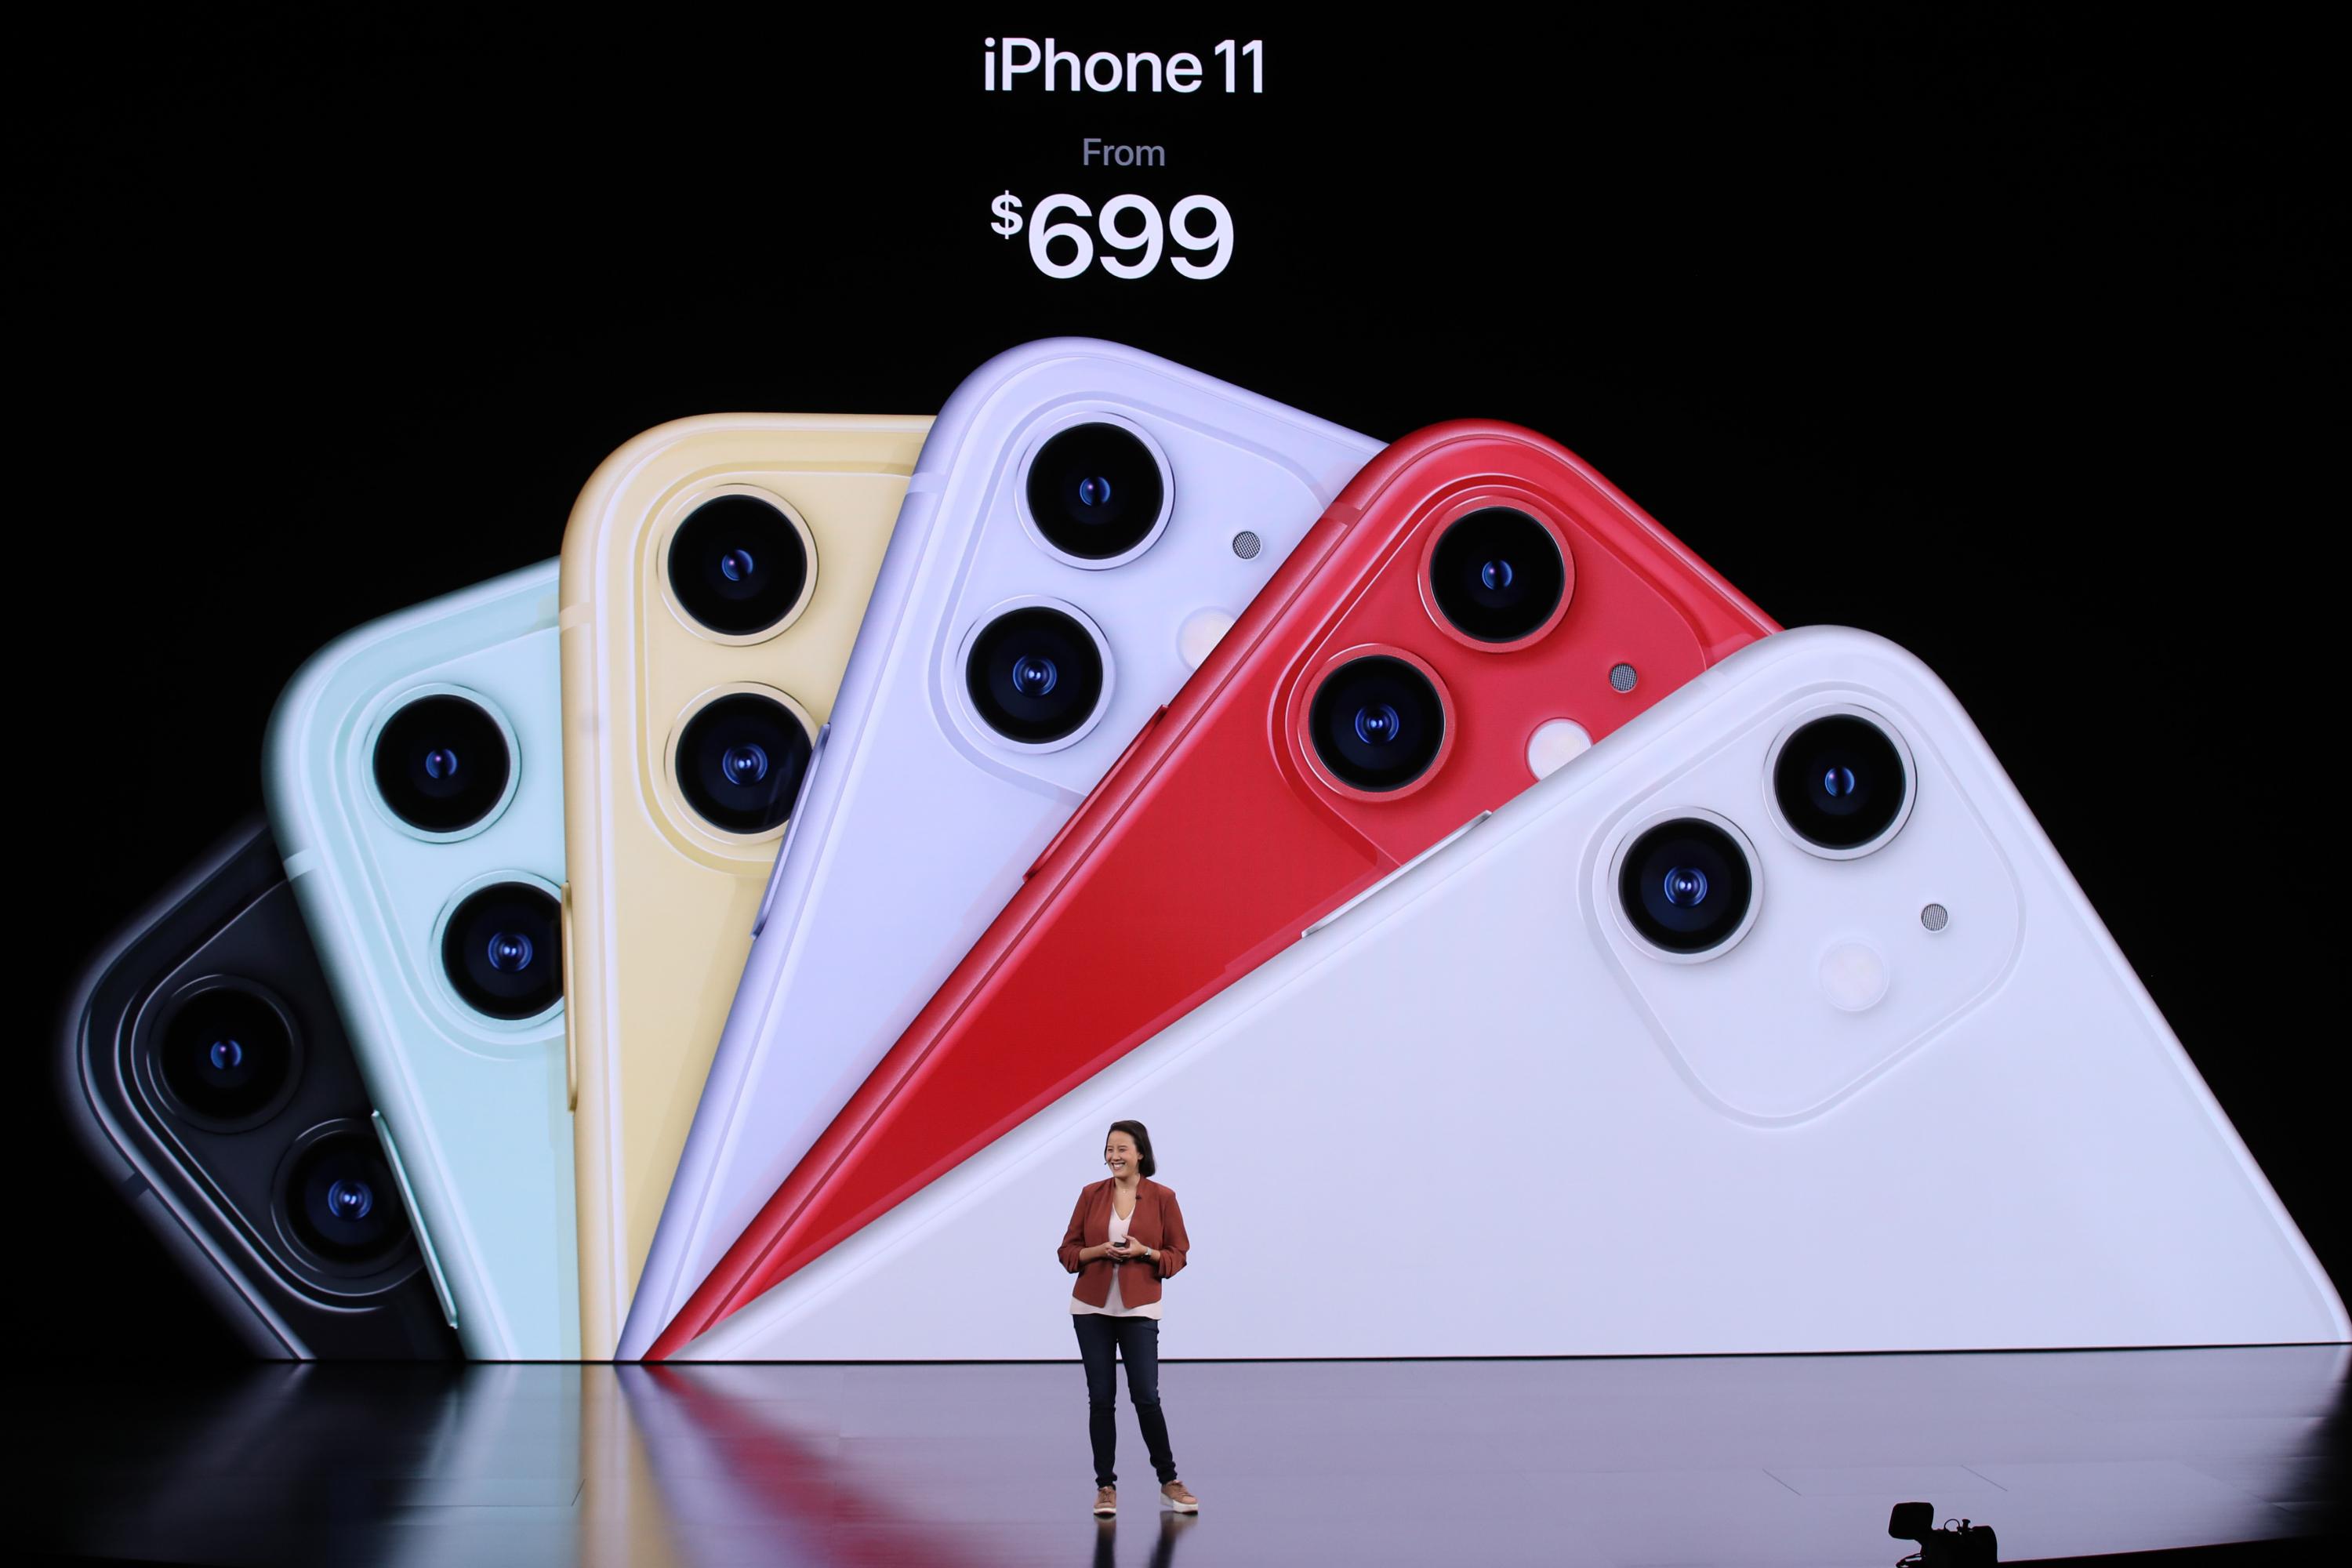 El modelo base del iPhone 11, con cámara dual, costará 699 dólares. (Foto: AFP)